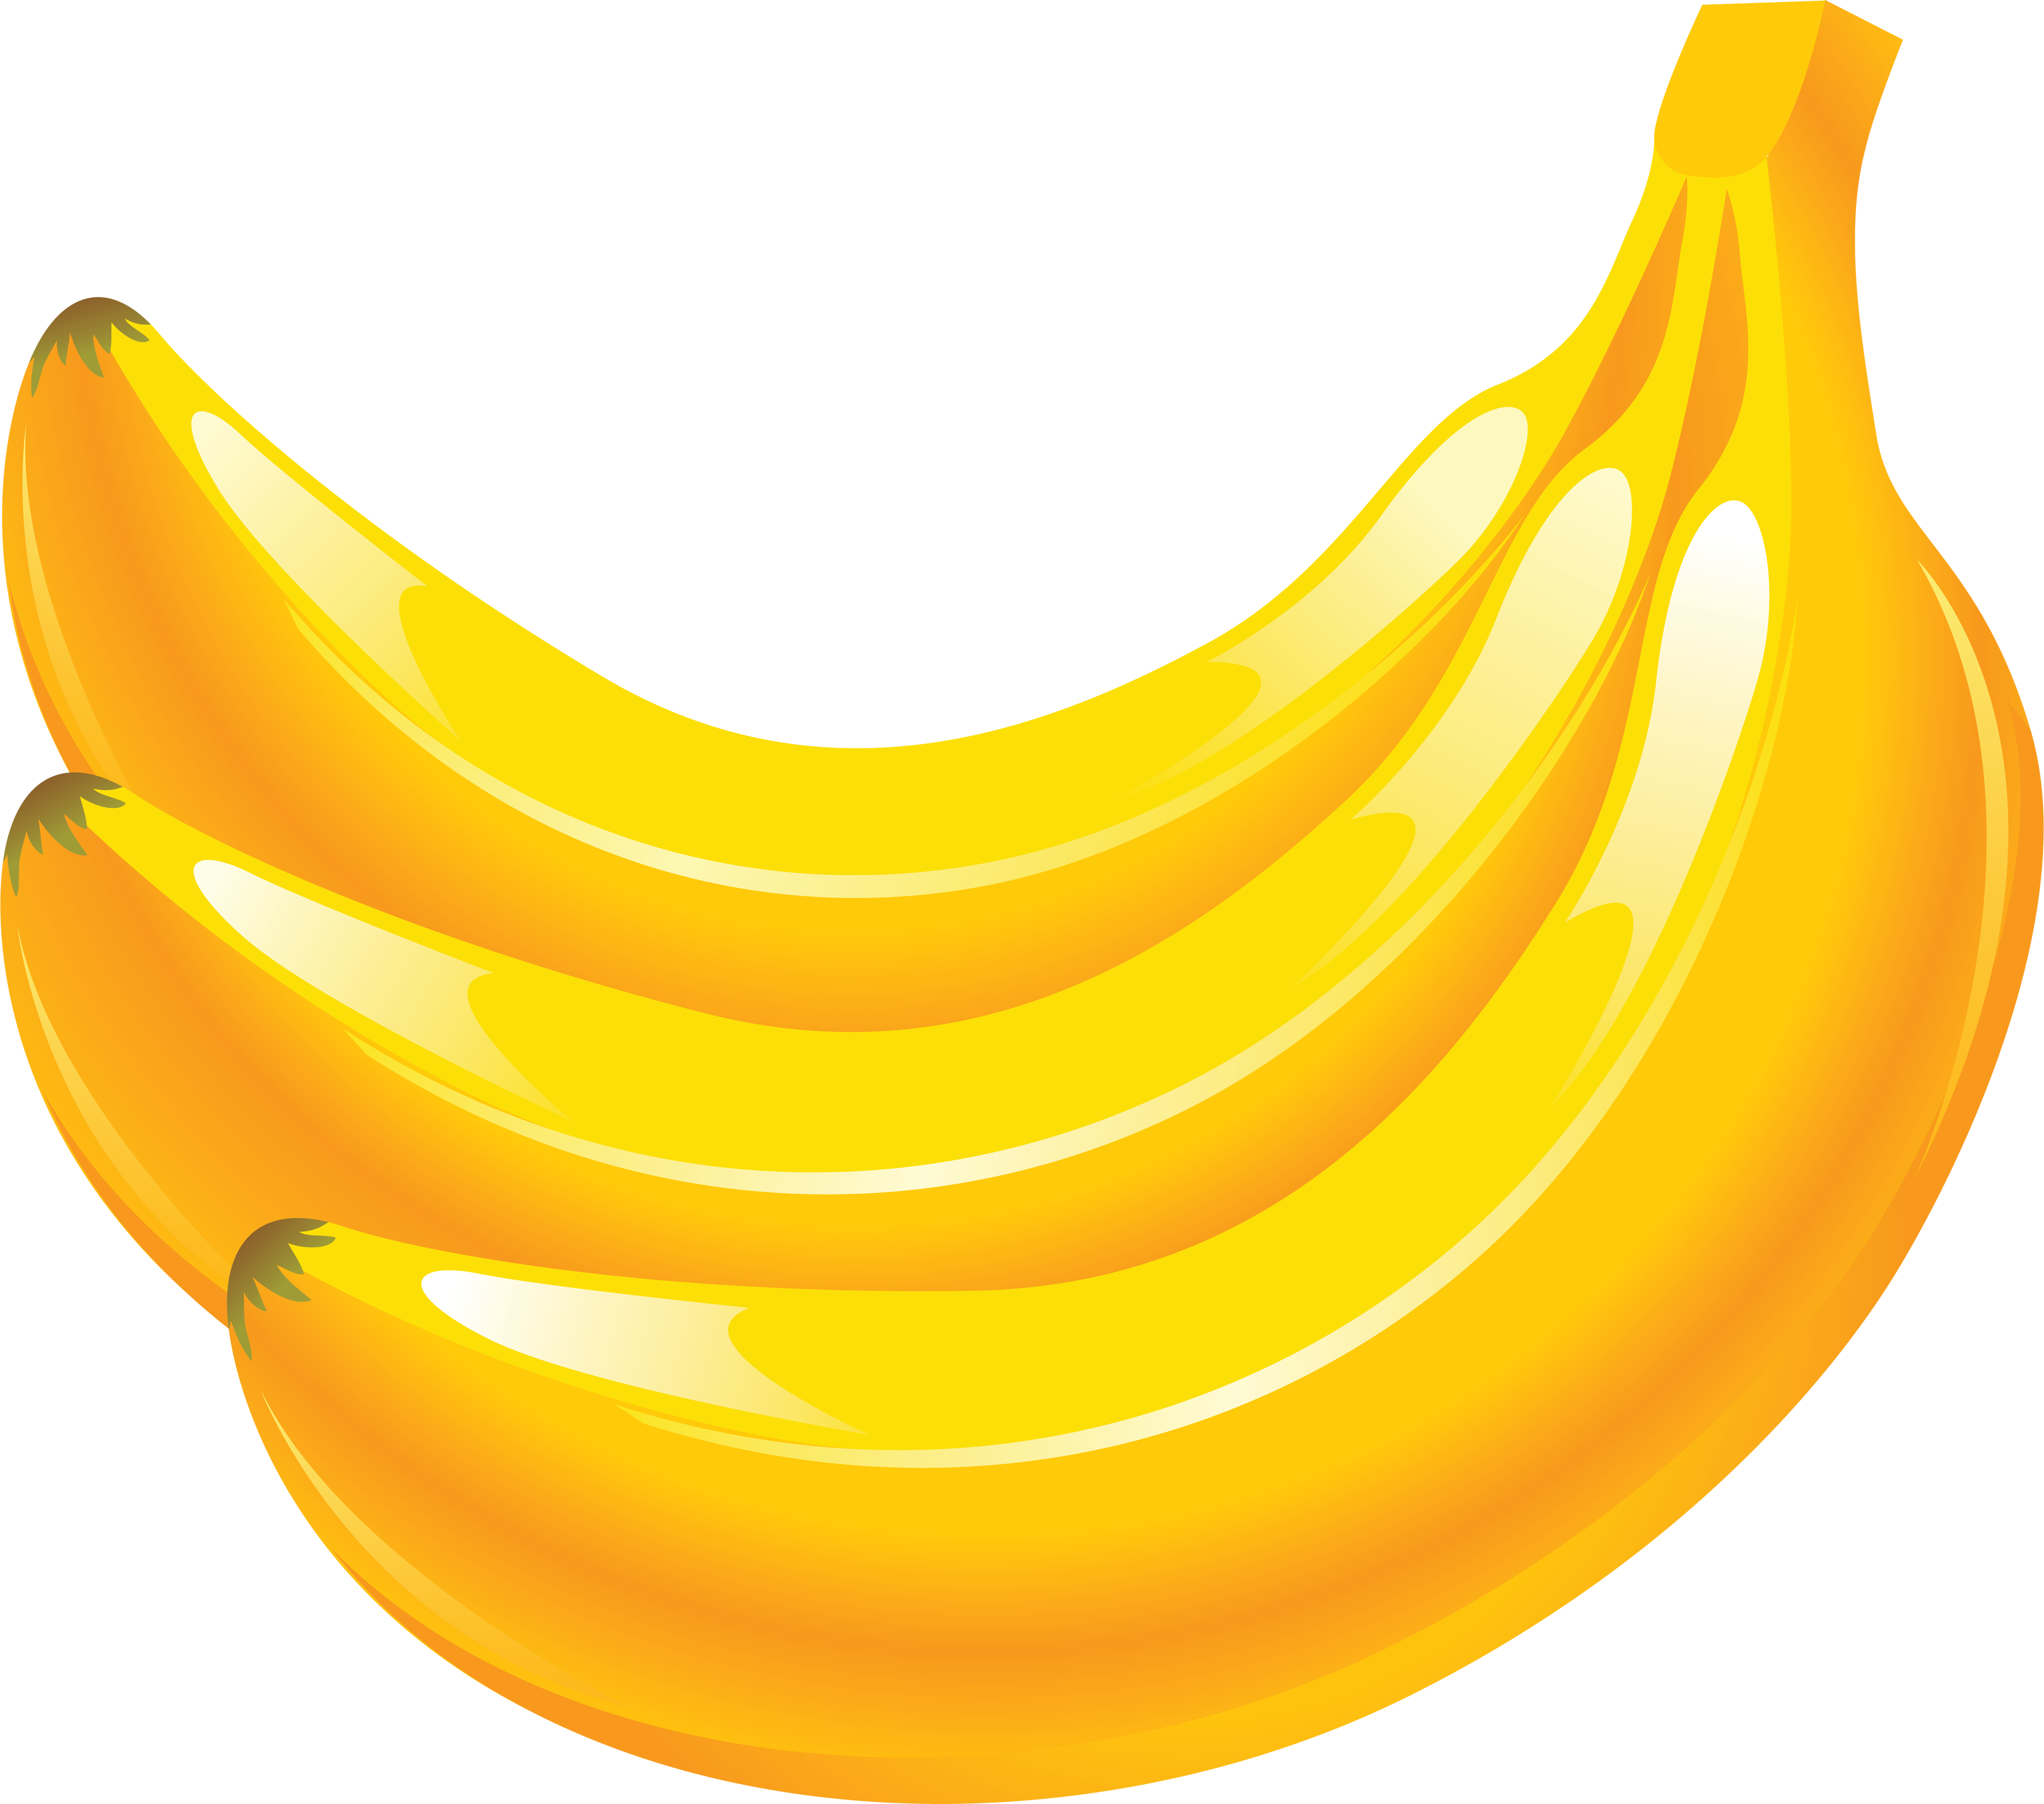 Banana clip art 6 - Clipartix